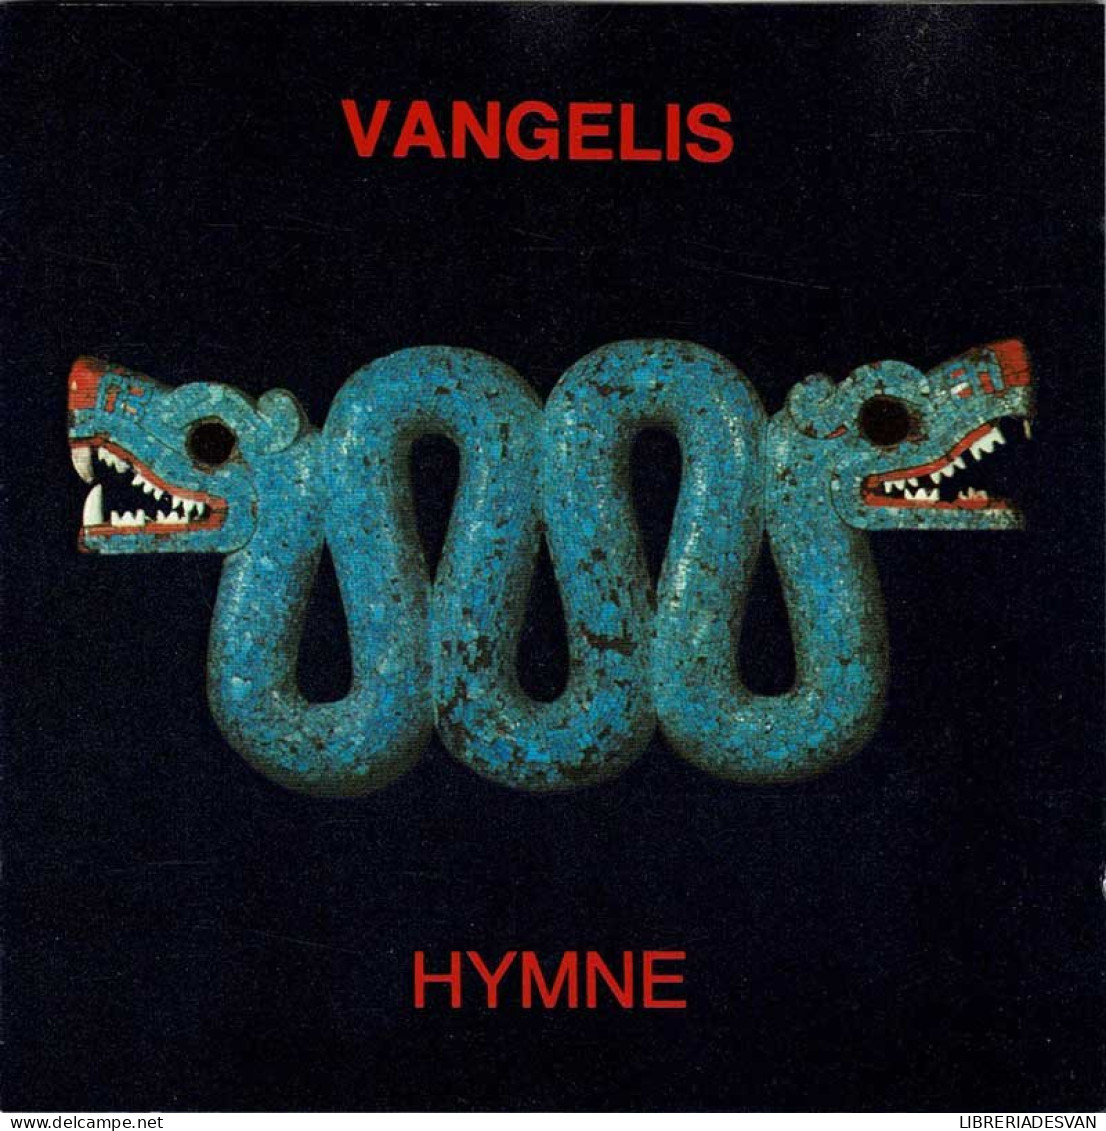 Vangelis - Hymne. CD - New Age